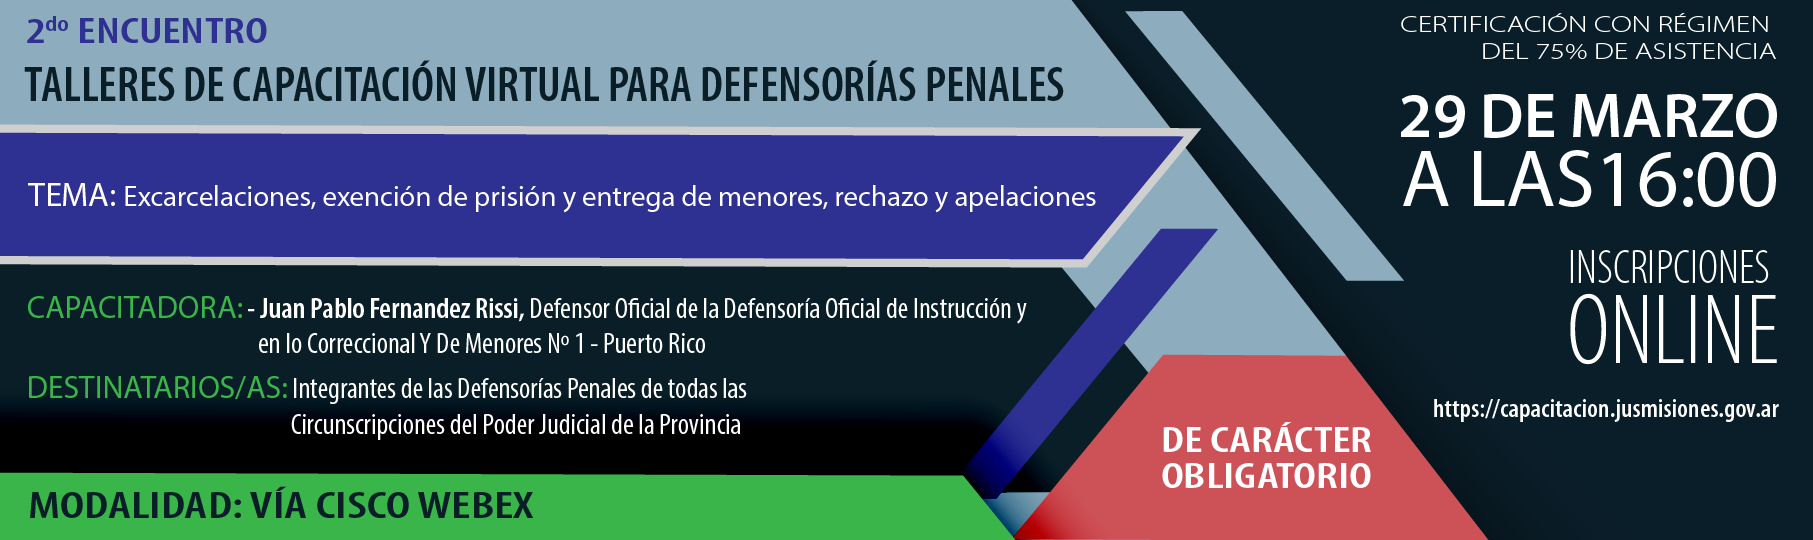 P2_Talleres_de_cap_virtual_para_Defensoras_penales-01